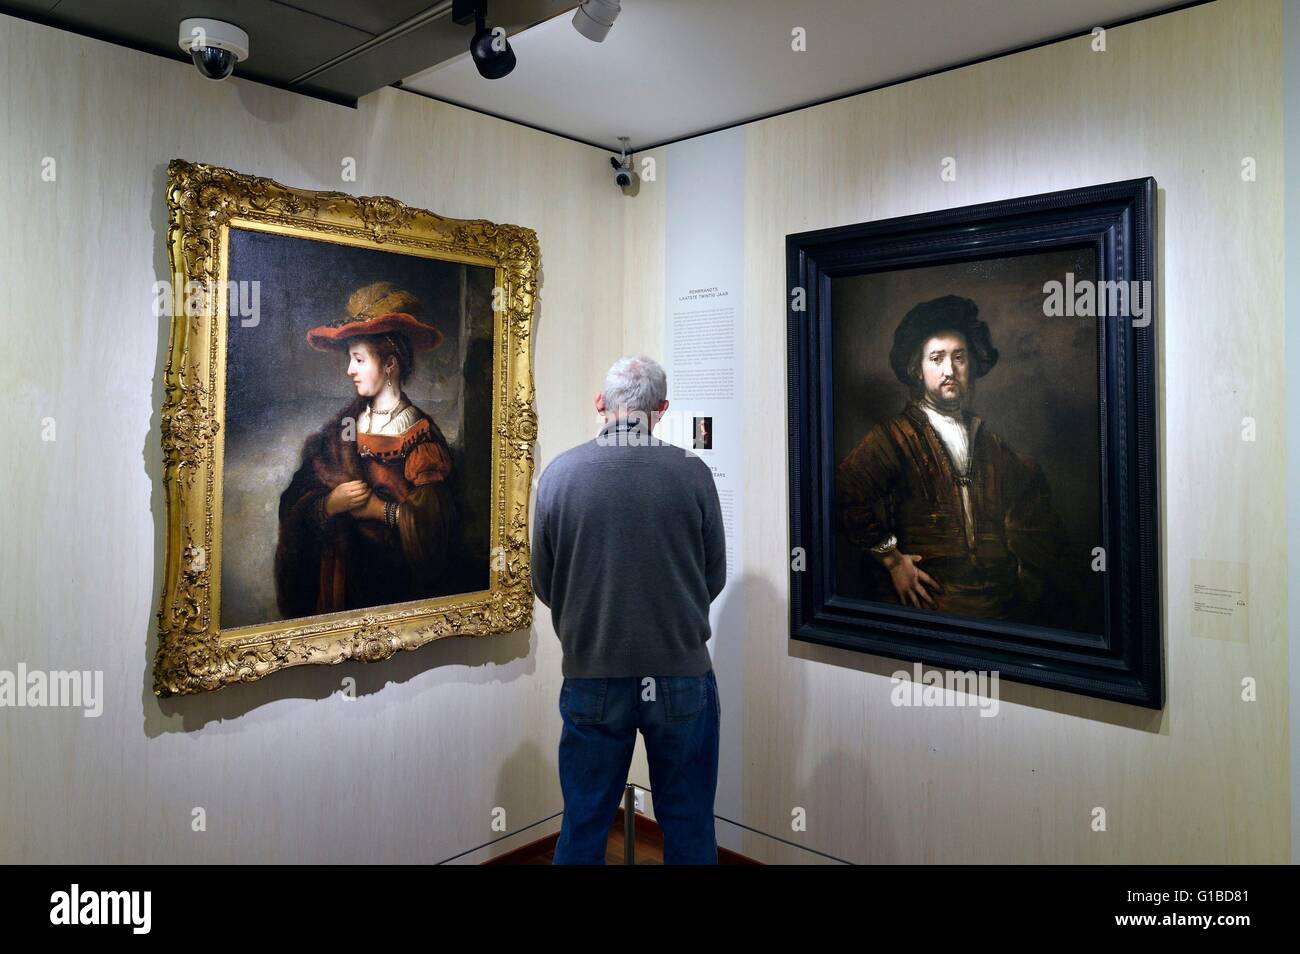 Pays-bas, le nord de la Hollande, Amsterdam, ancien quartier juif, la maison de Rembrandt (Rembrandt), Portrait de Saskia de profil, élève de Rembrandt anonyme en 1652 et Portrait of a Man with Arms Akimbo, Rembrandt, 1658 Banque D'Images